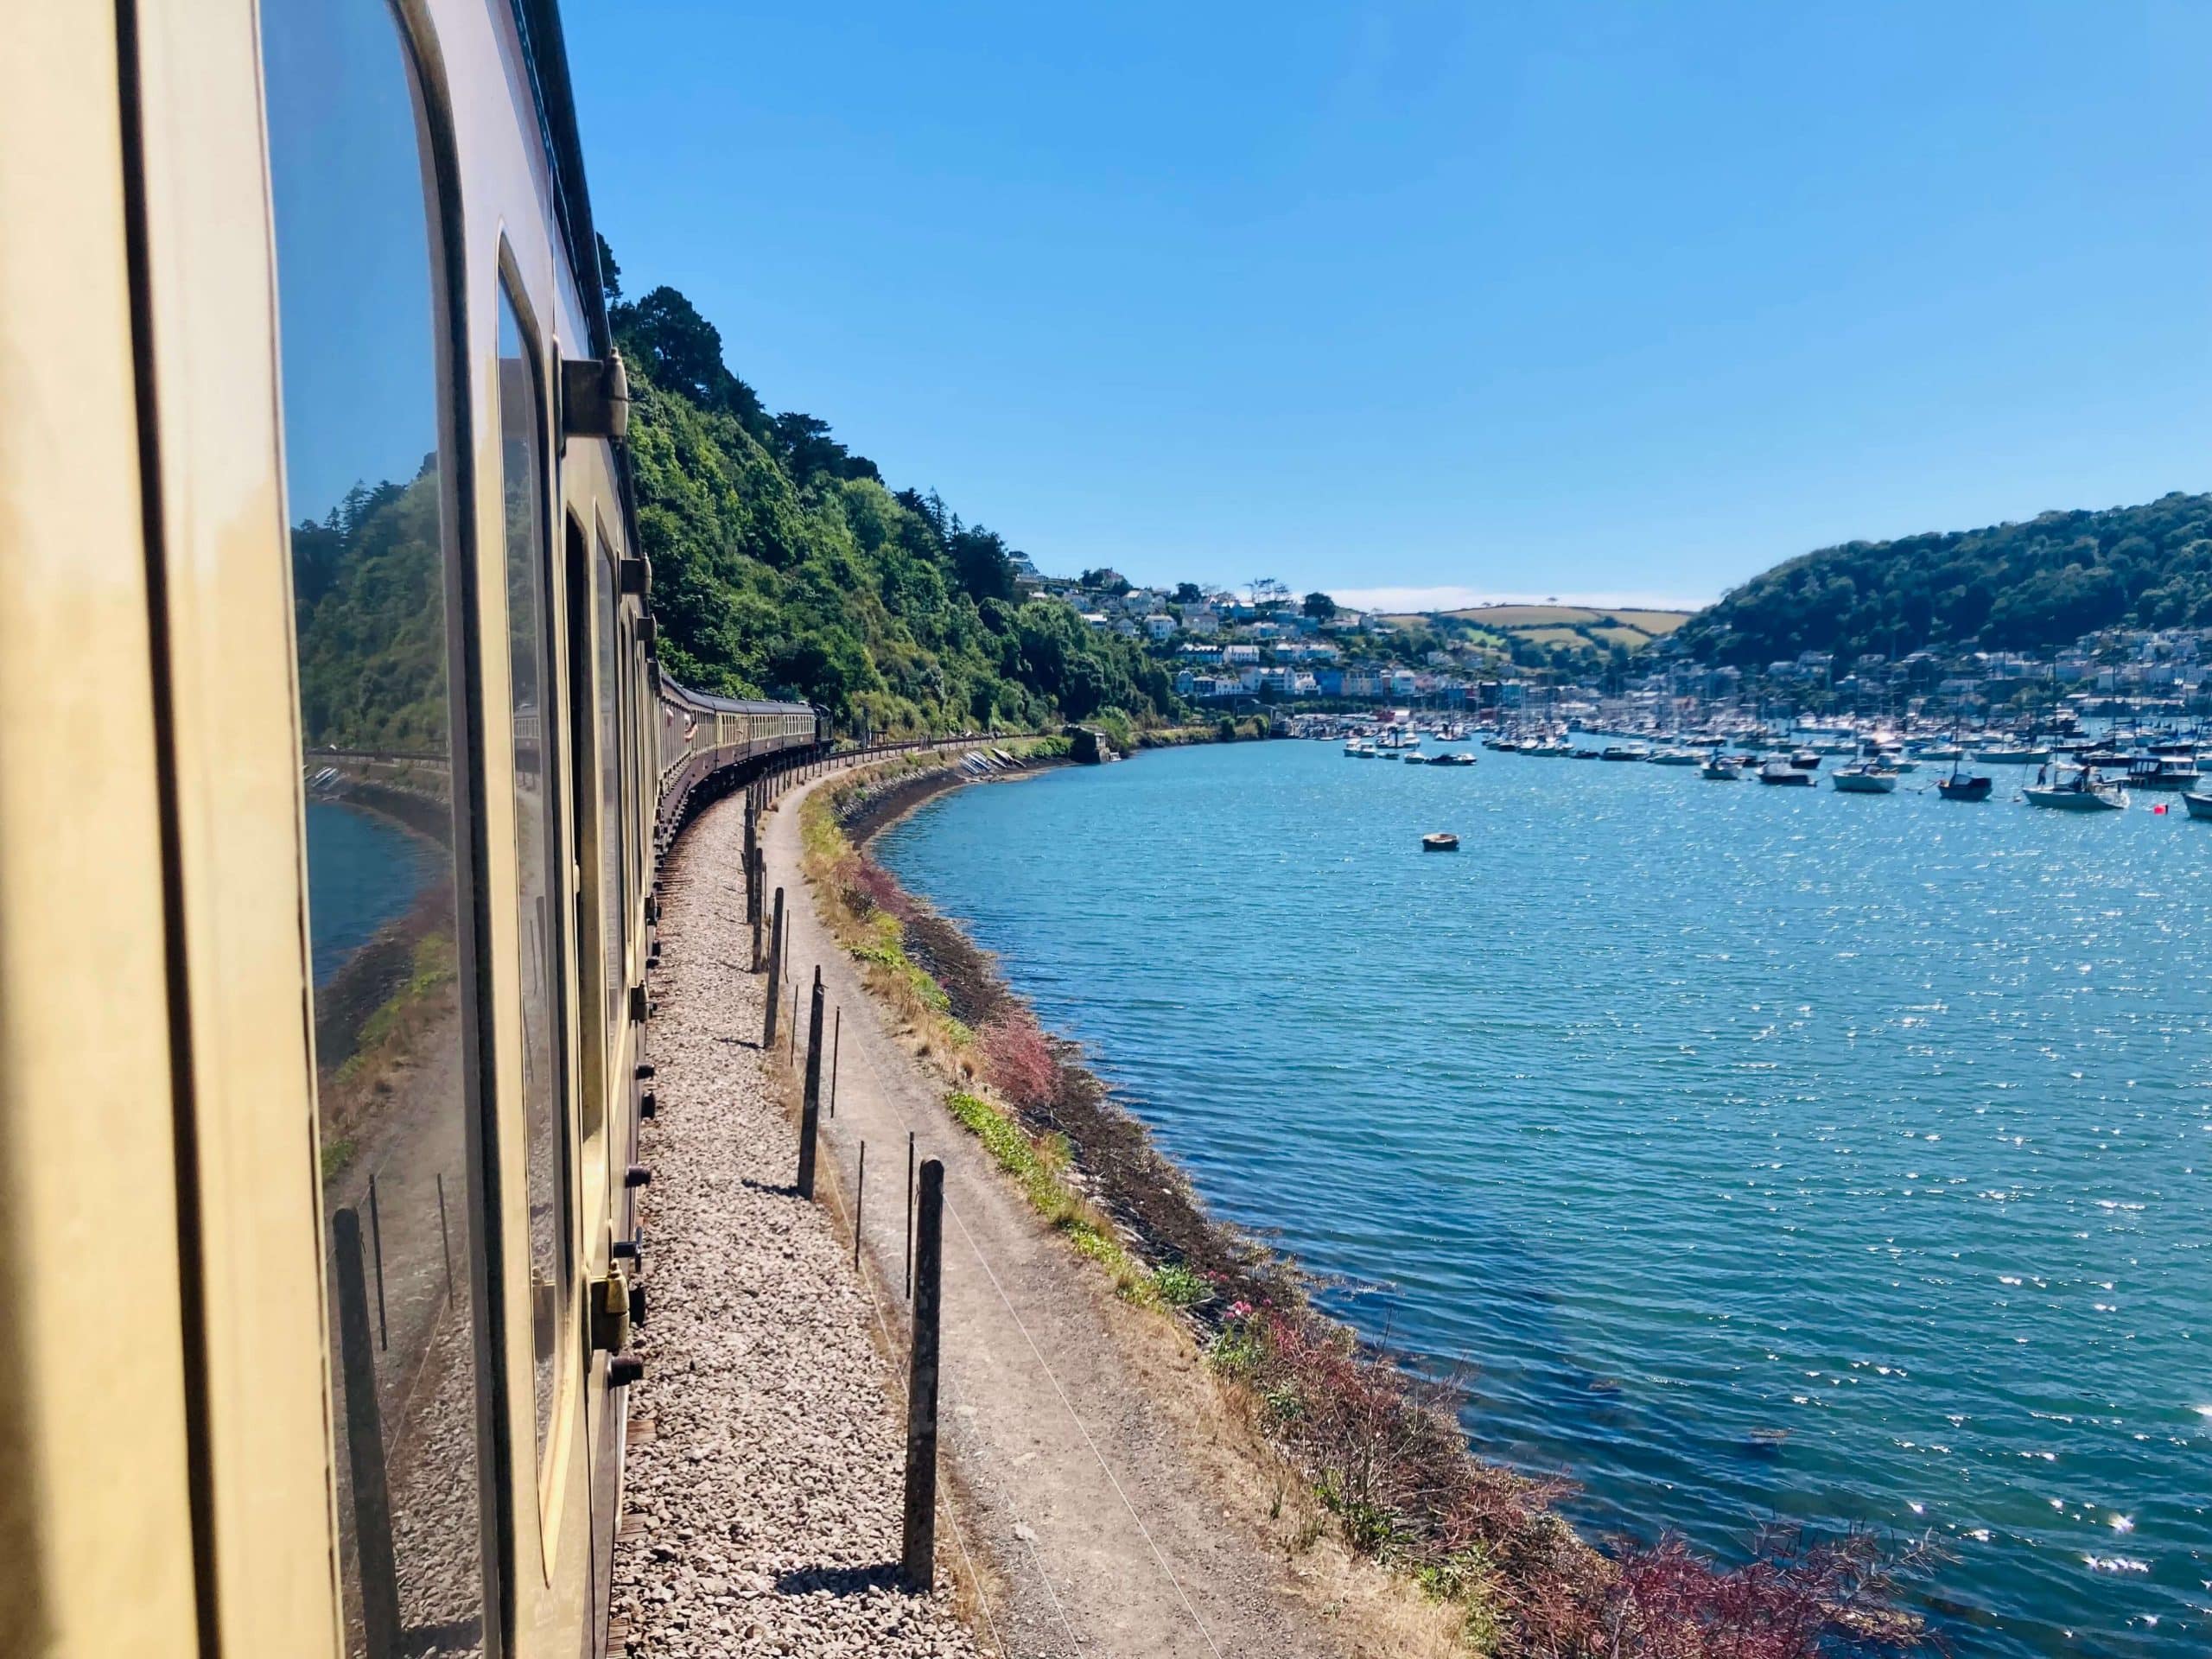 Goliath steam train coming into Dartmouth, Devon